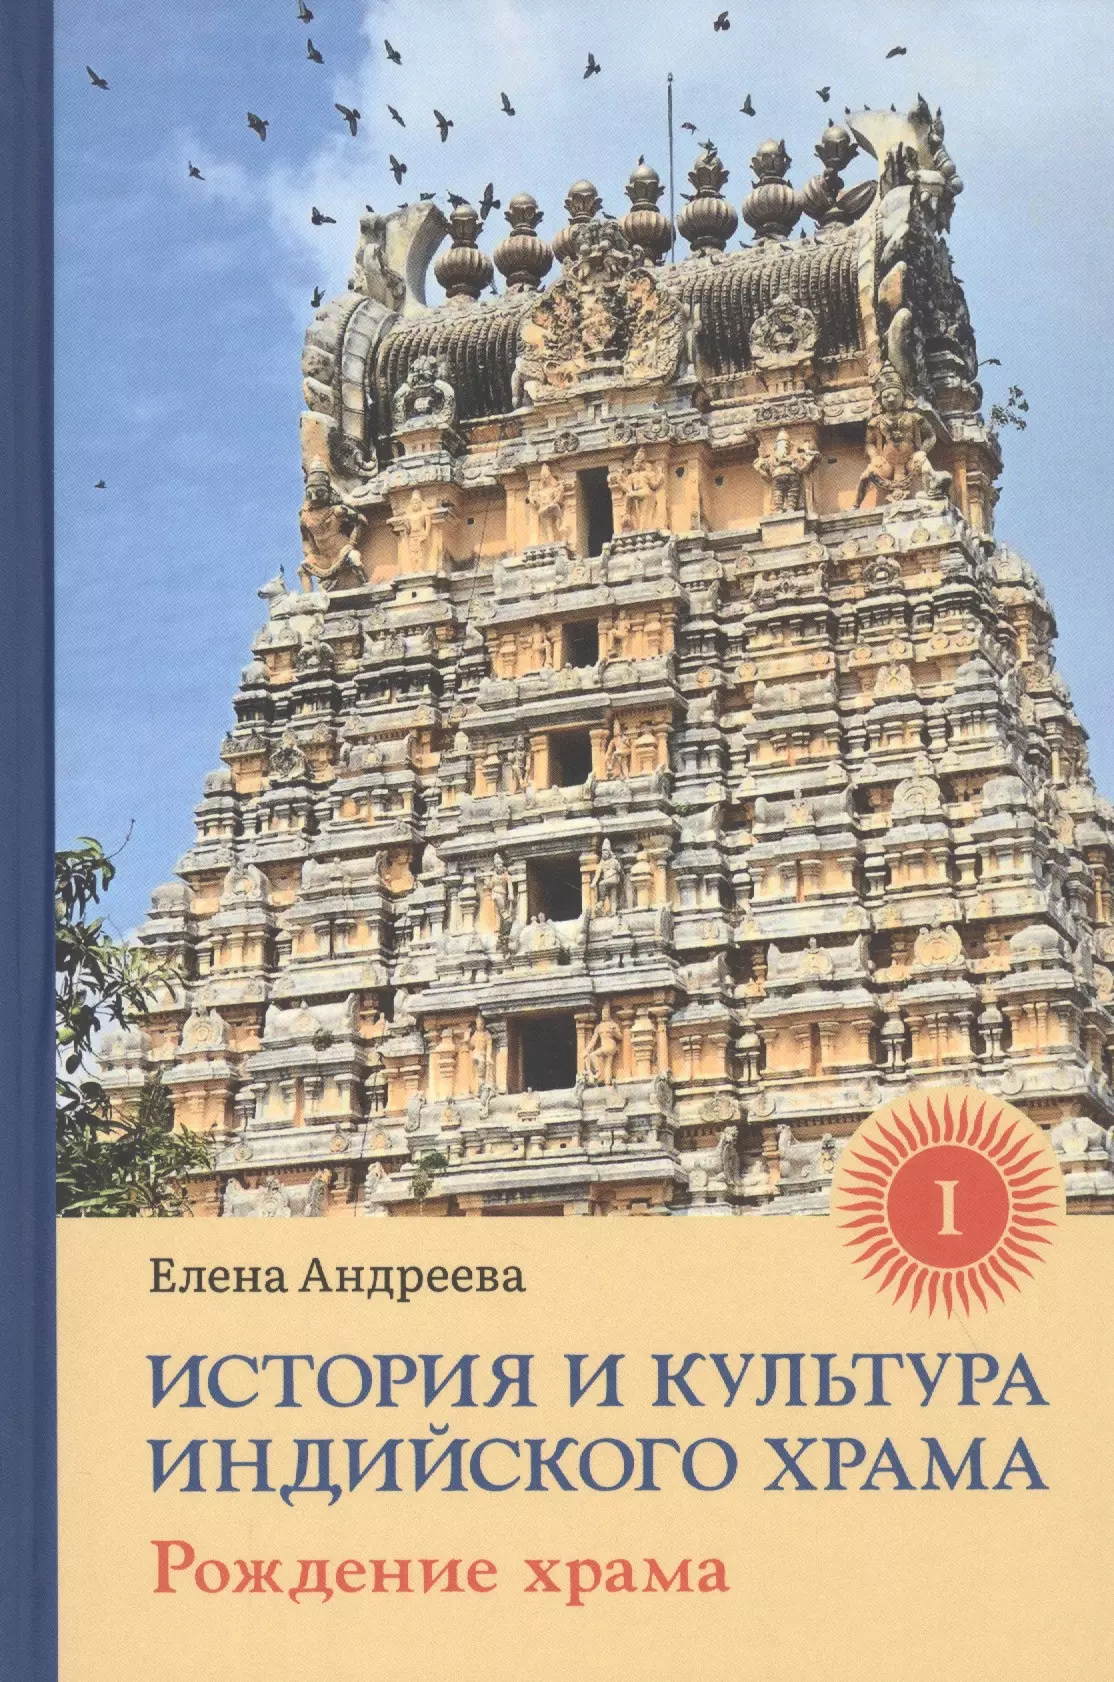 История и культура индийского храма: Книга I. Рождение храма фан ю история храма конфуция